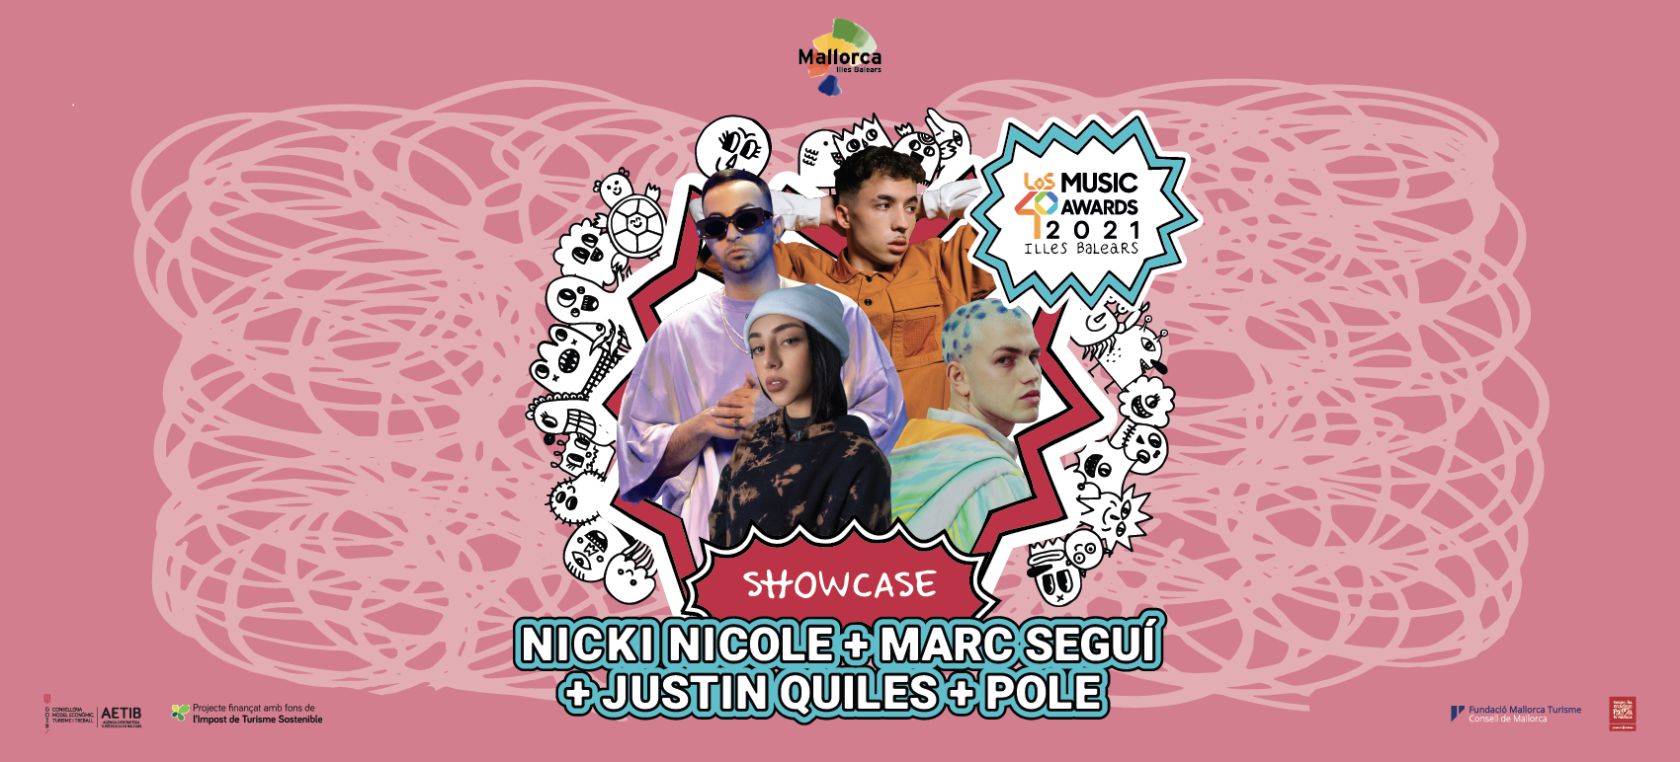 LOS40 URBAN SHOWCASE: ¡Consigue tu pase para ver a Nicki Nicole, Justin Quiles, Marc Seguí y Pole!